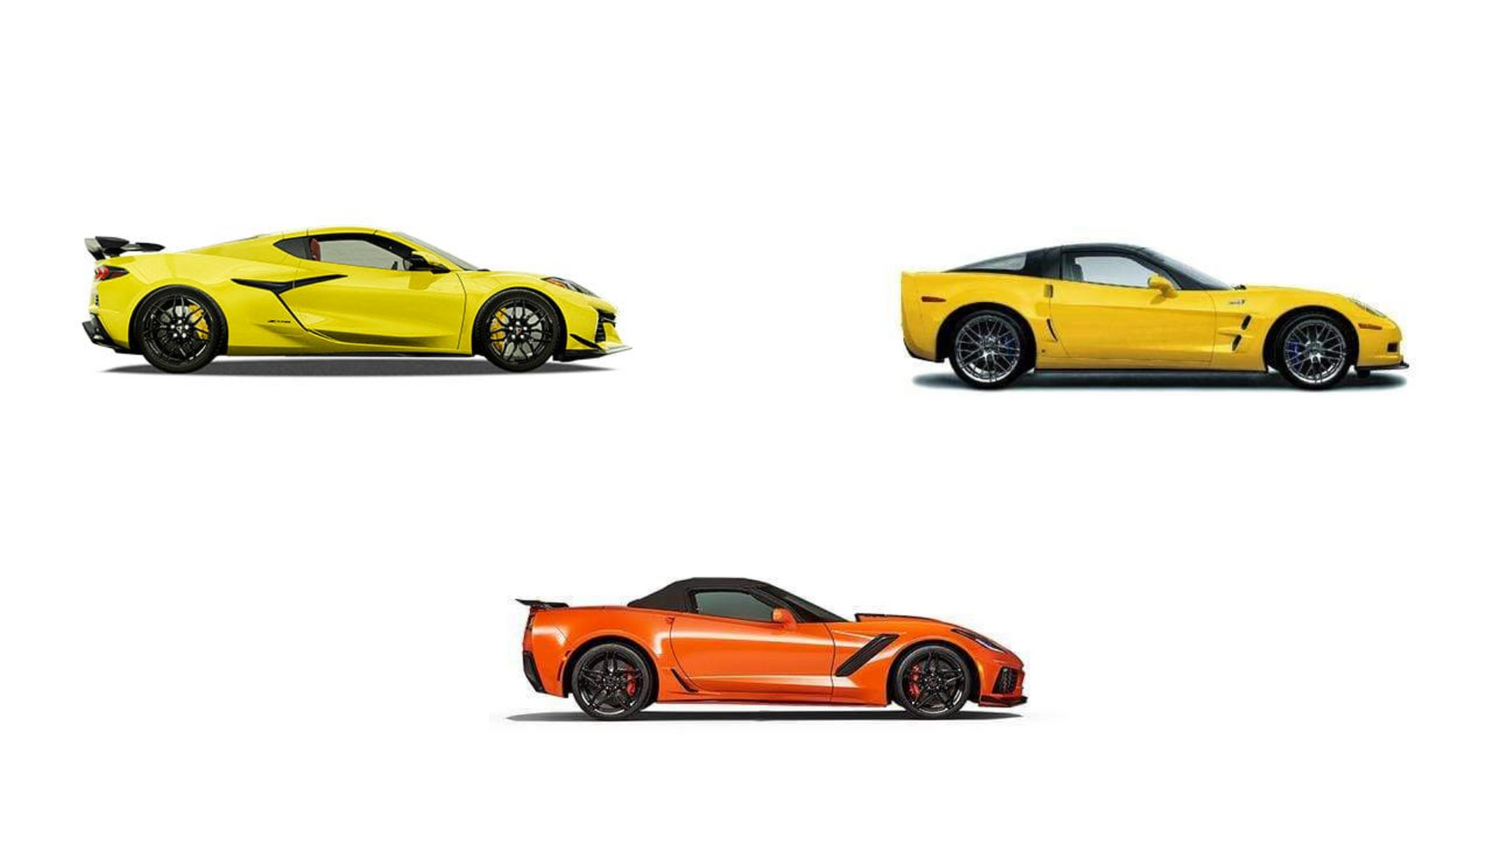 Three generations of corvettes a c8 corvette z06, a c7 zr1 and a C6 zr1